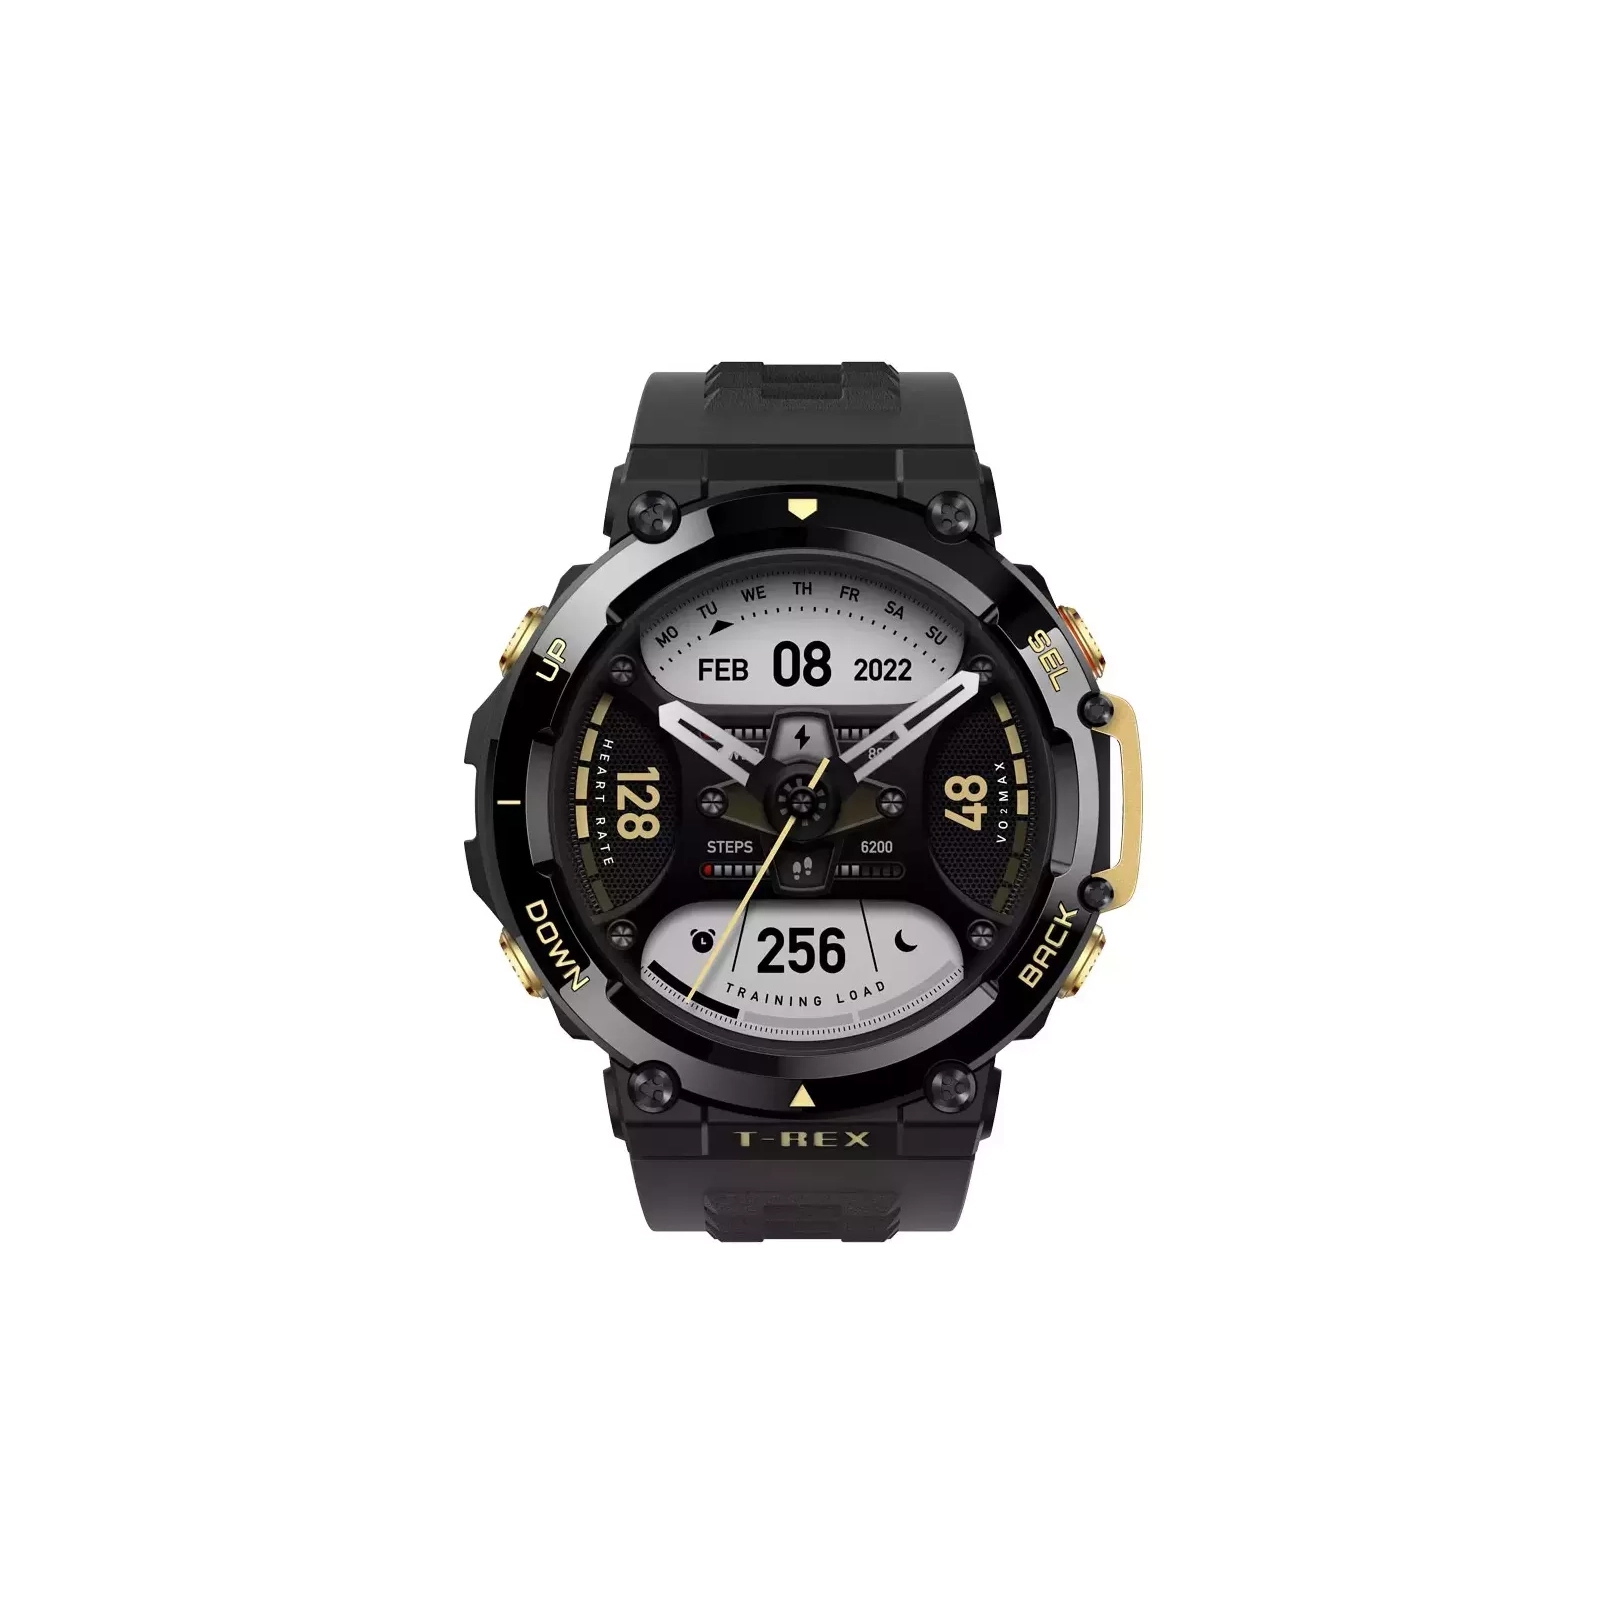 Смарт-часы Amazfit T-REX 2 Astro Black Gold (955552) изображение 2